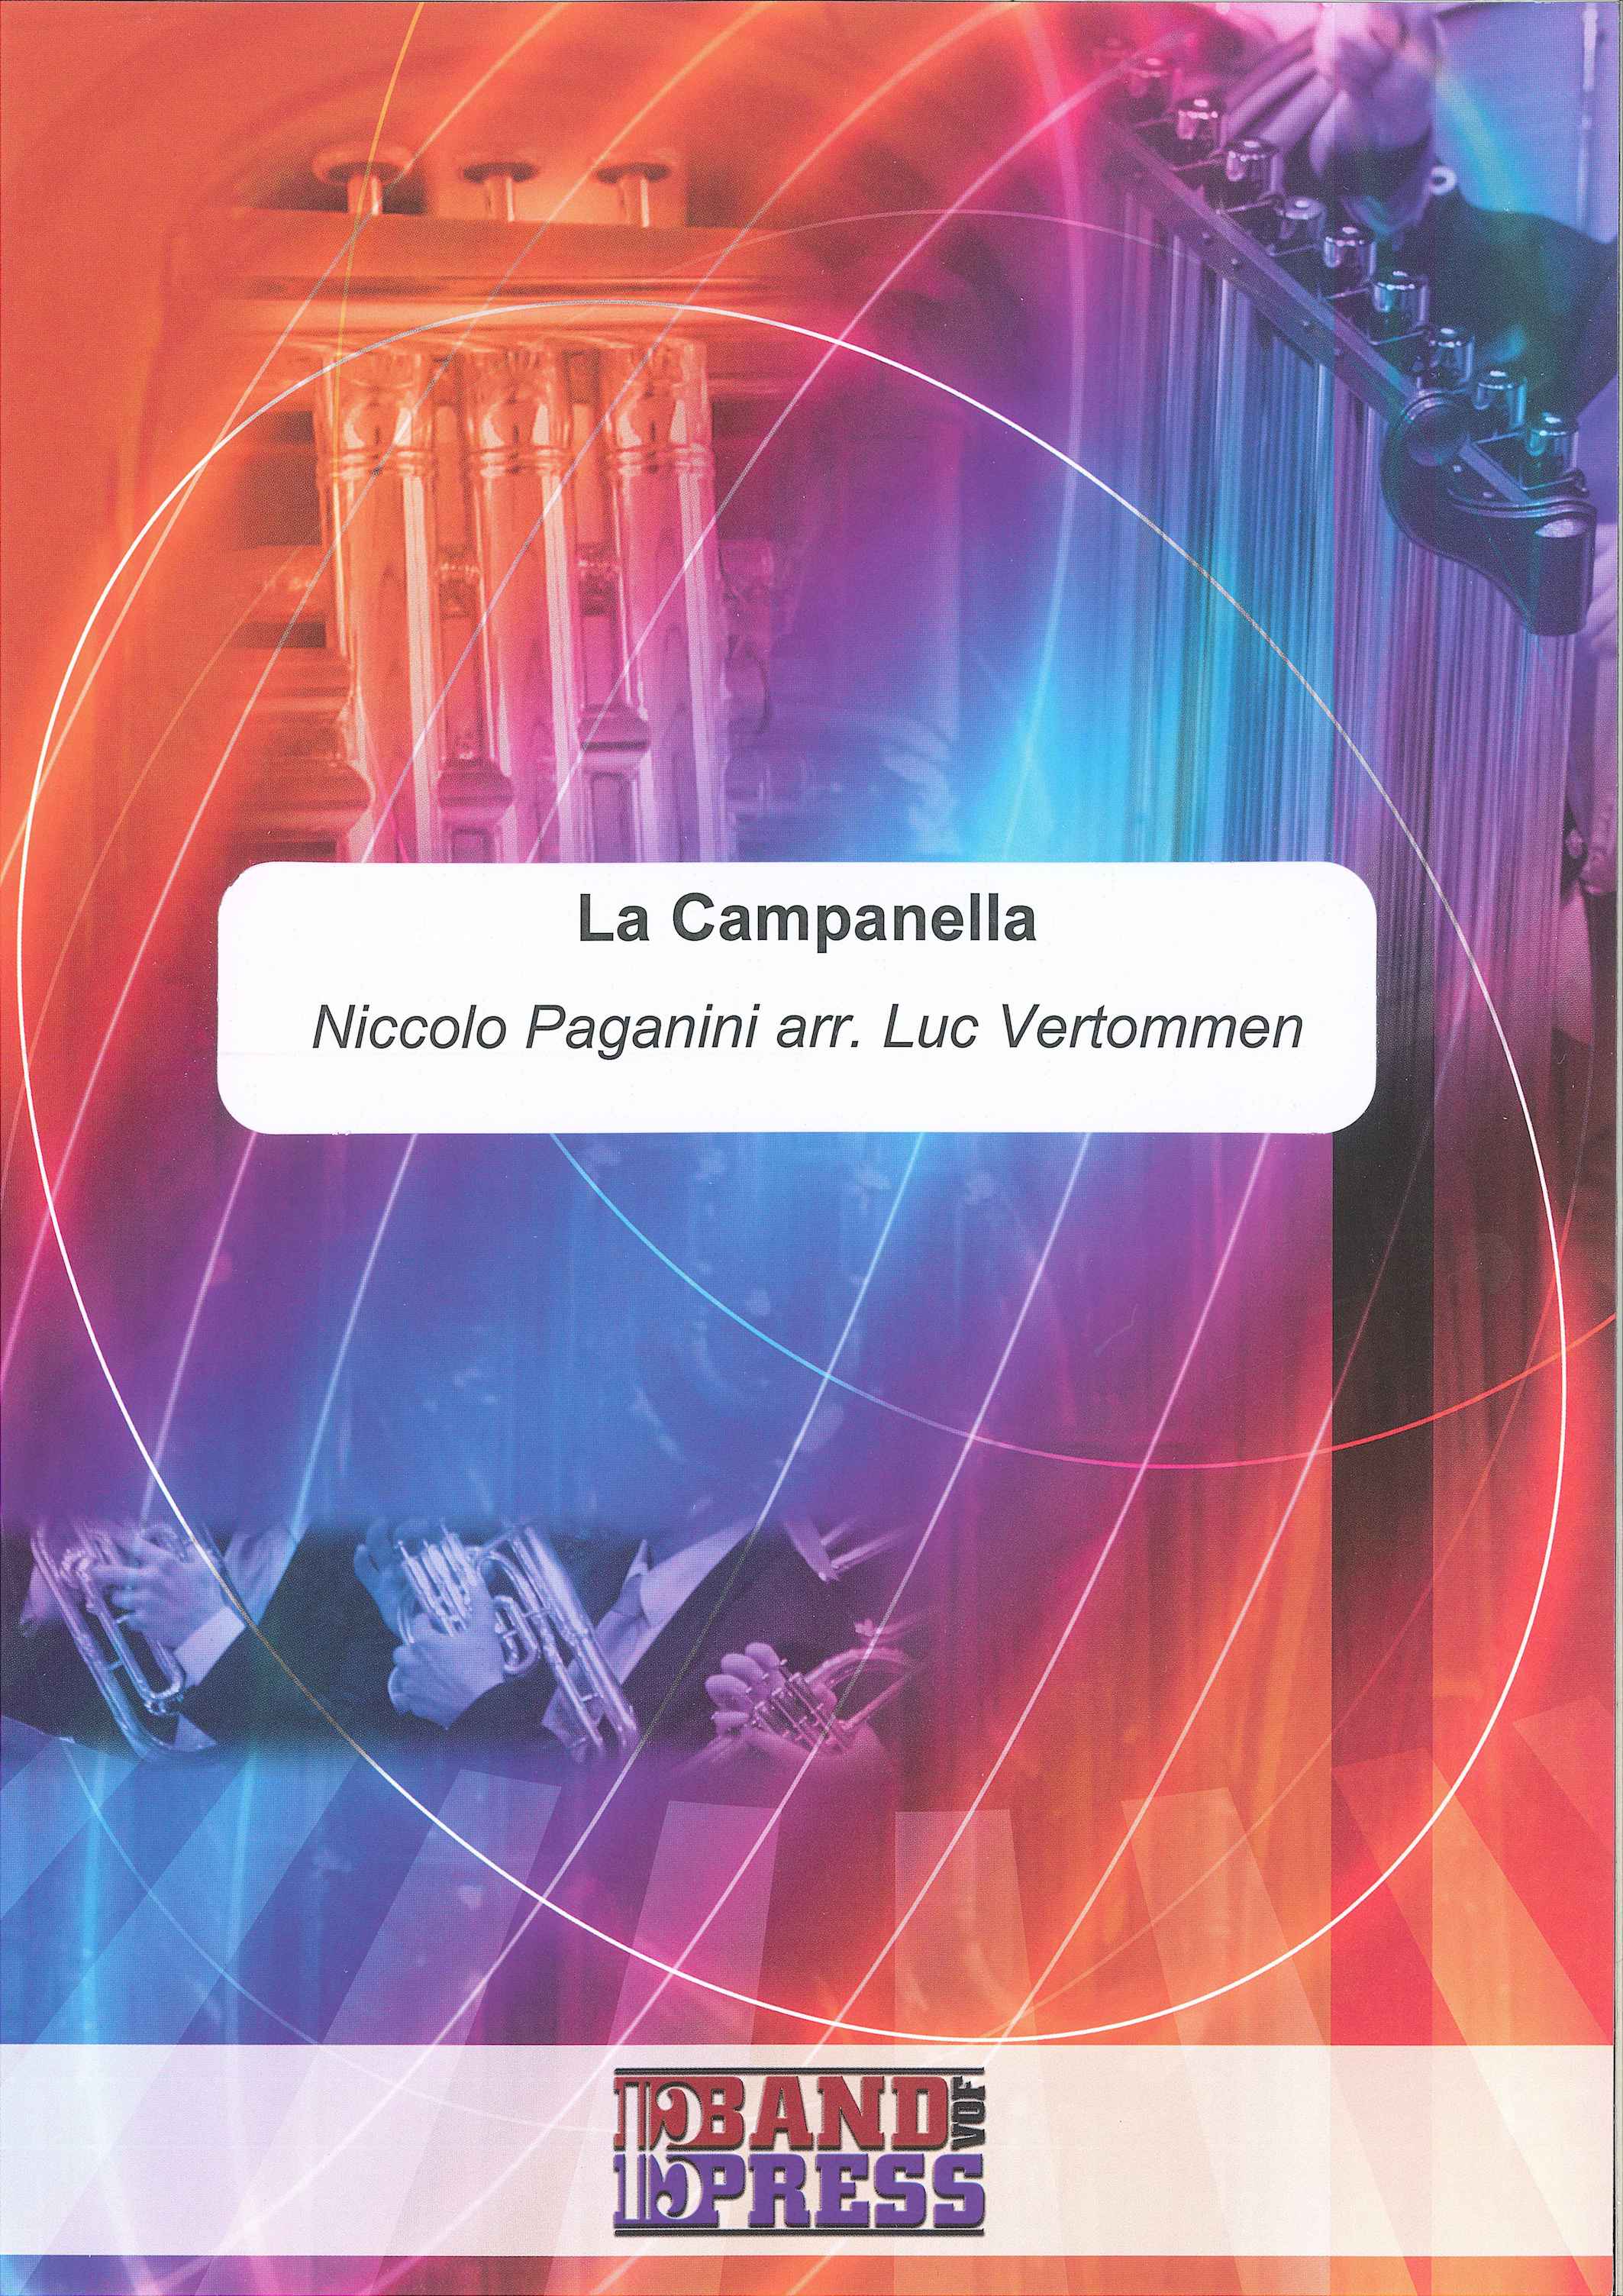 La Campanella - Nicolo Paganini - Euph and Piano